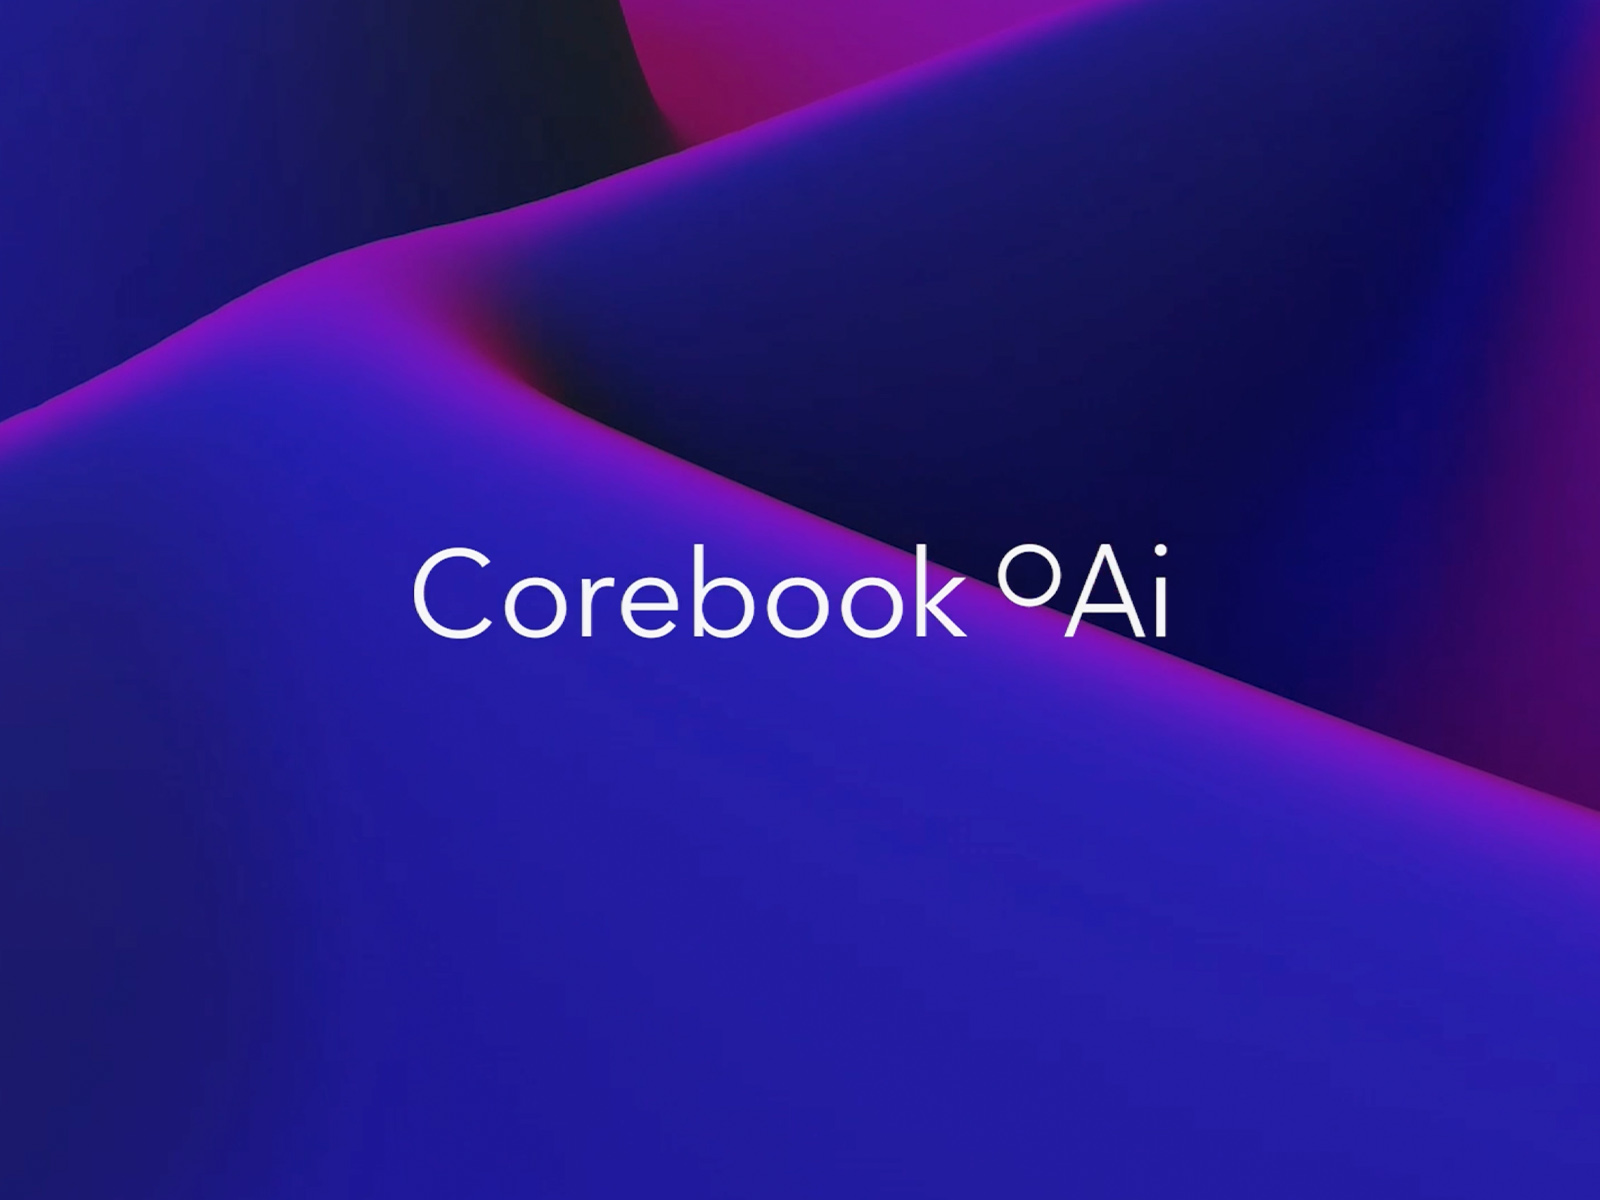 Corebook°Ai reveal 3D animation